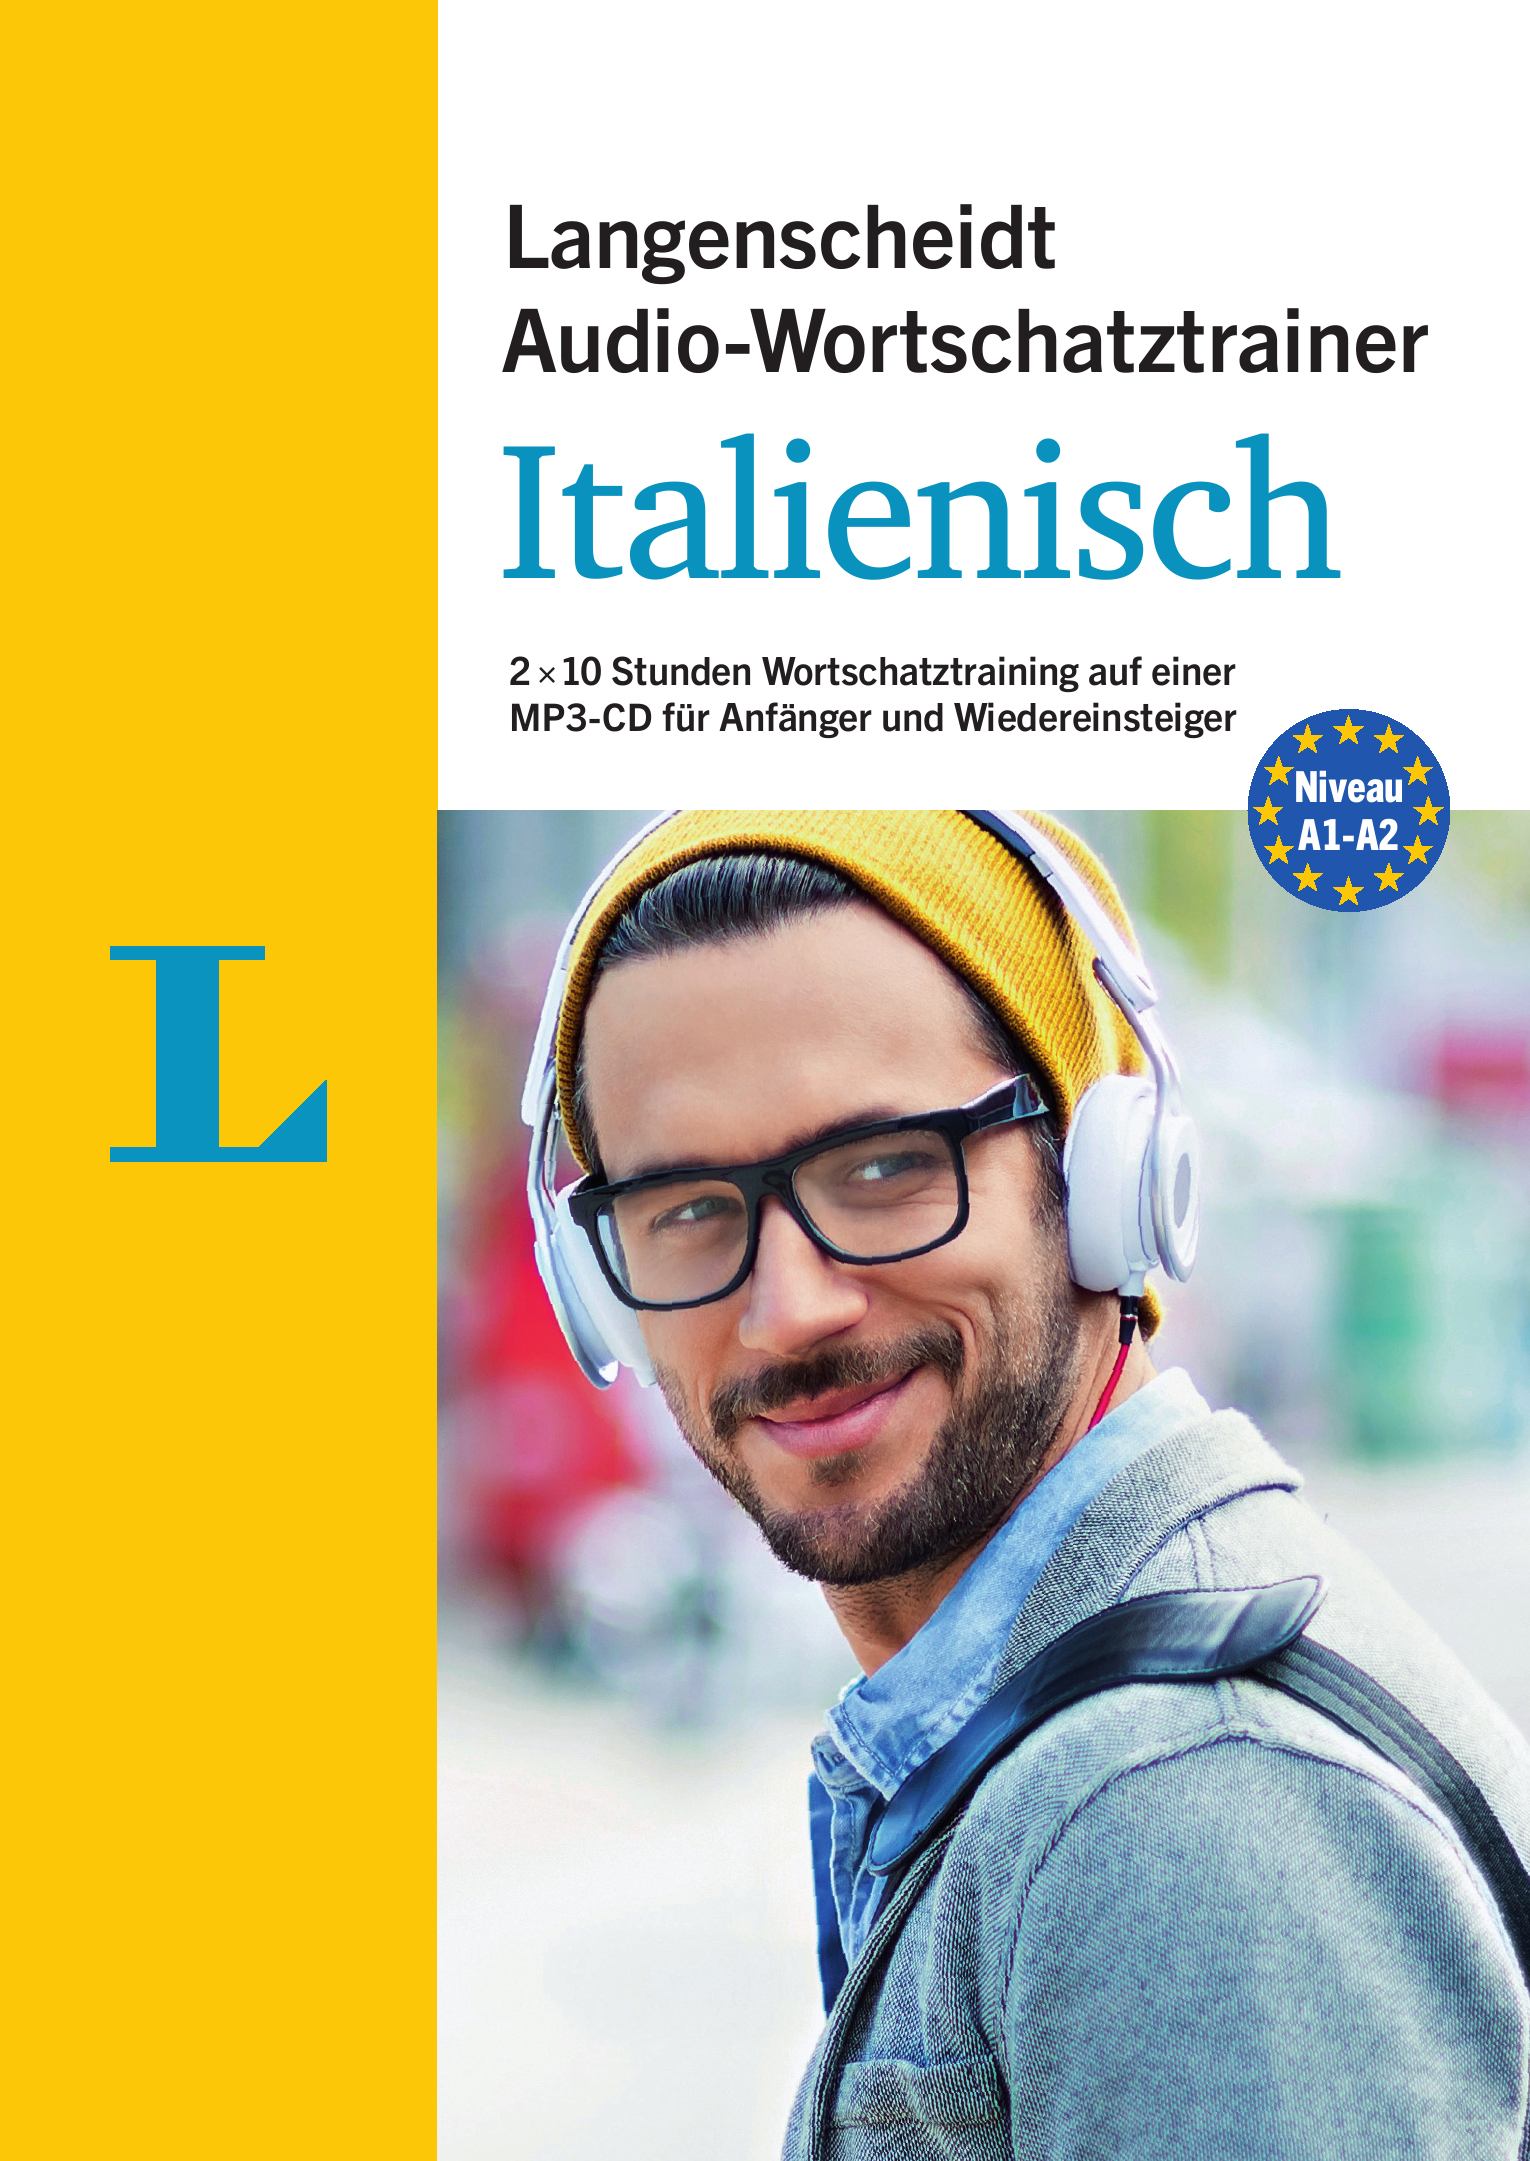 Langenscheidt Audio-Wortschatztrainer Italienisch für Anfänger